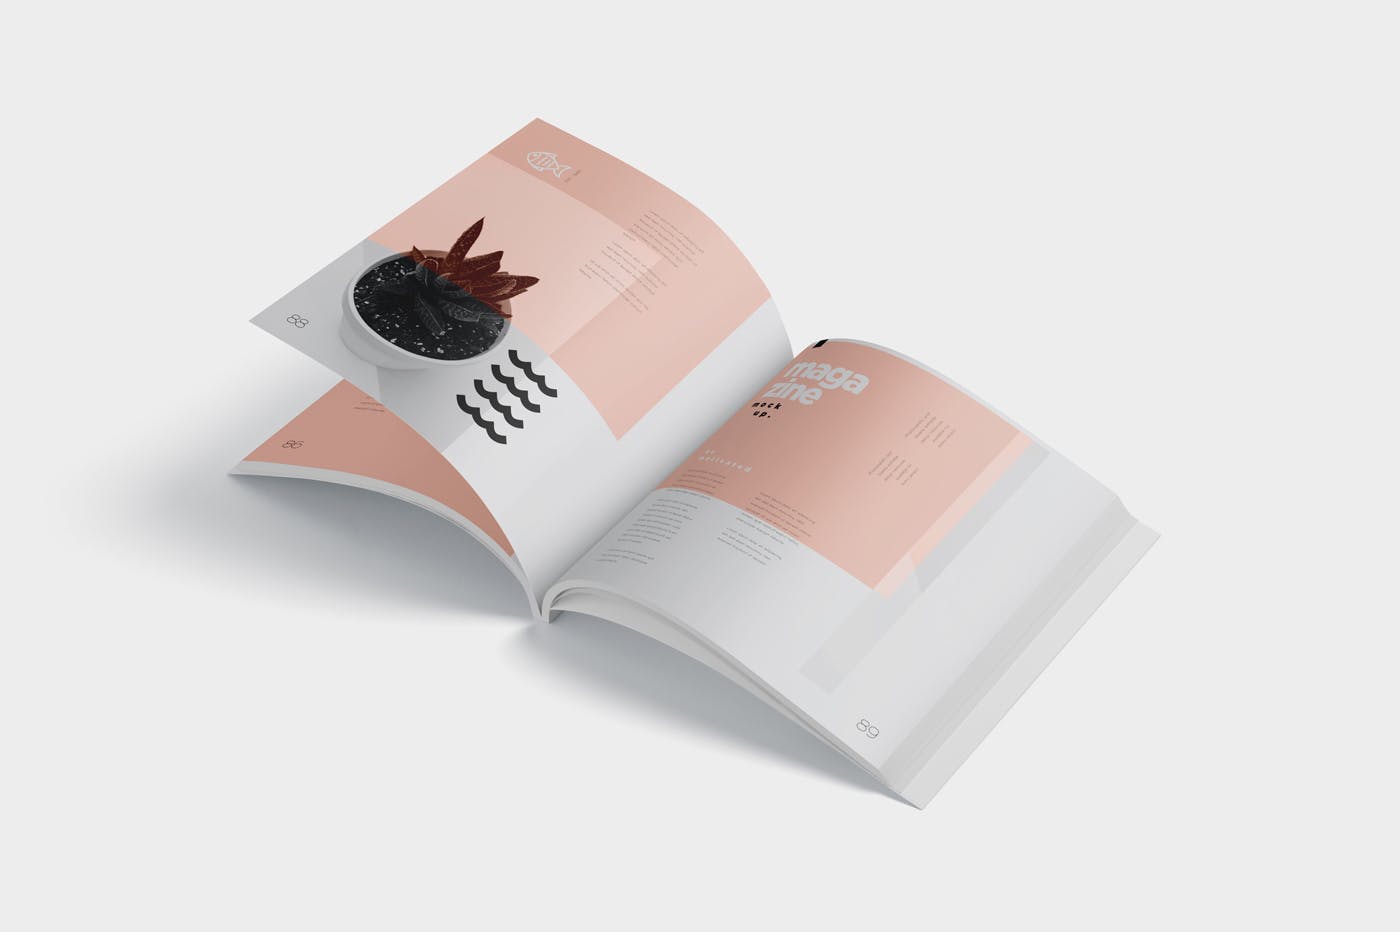 杂志内页排版设计印刷效果图样机 Open Magazine Mockups插图(4)